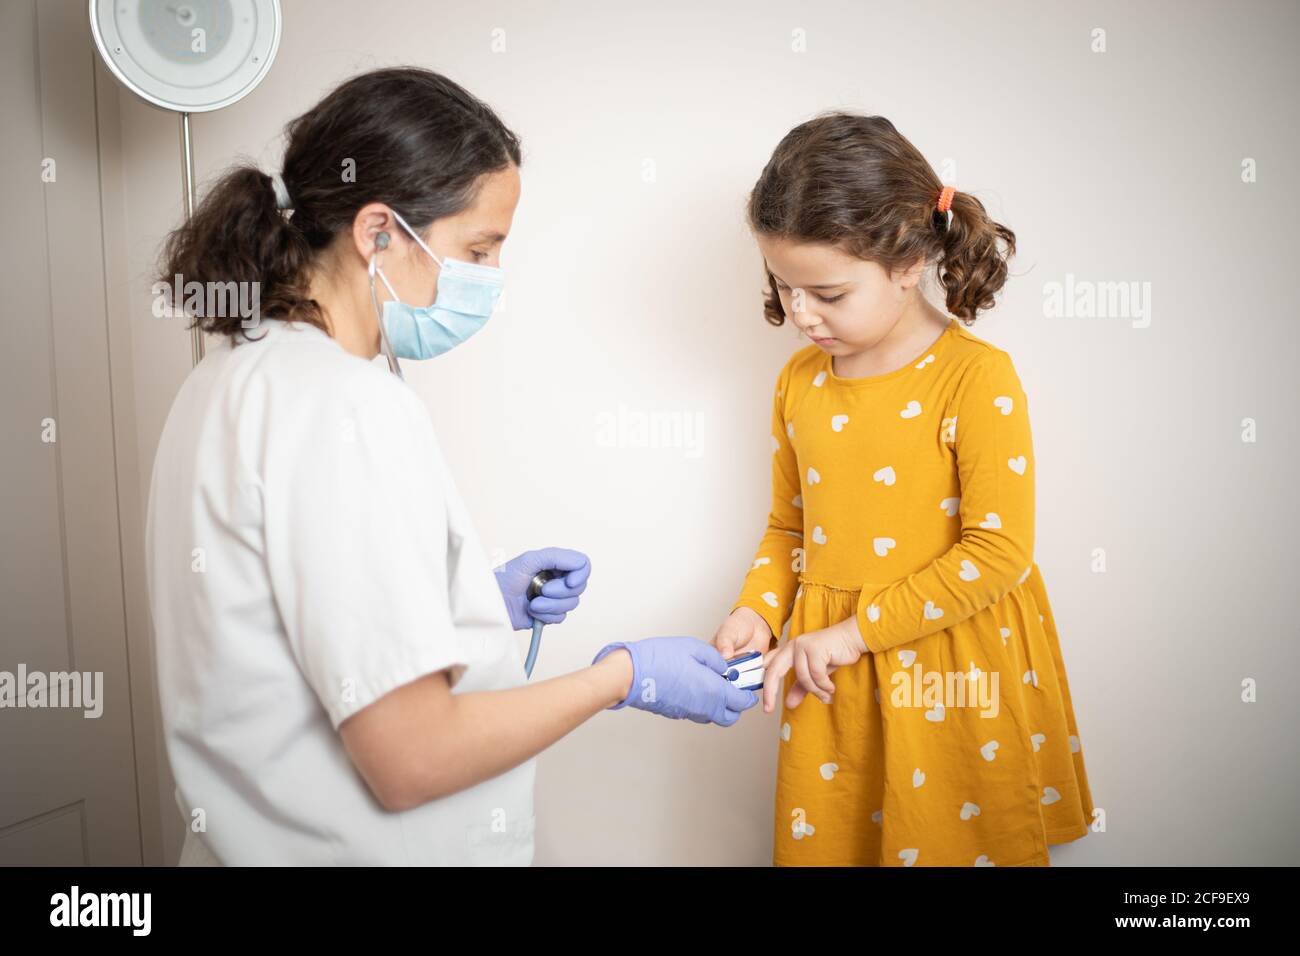 Ein Arzt in Latexhandschuhen mit Fingermanschette zu untersuchen Blutdruck von kleinen Mädchen in lässigen gelben Kleid Stockfoto